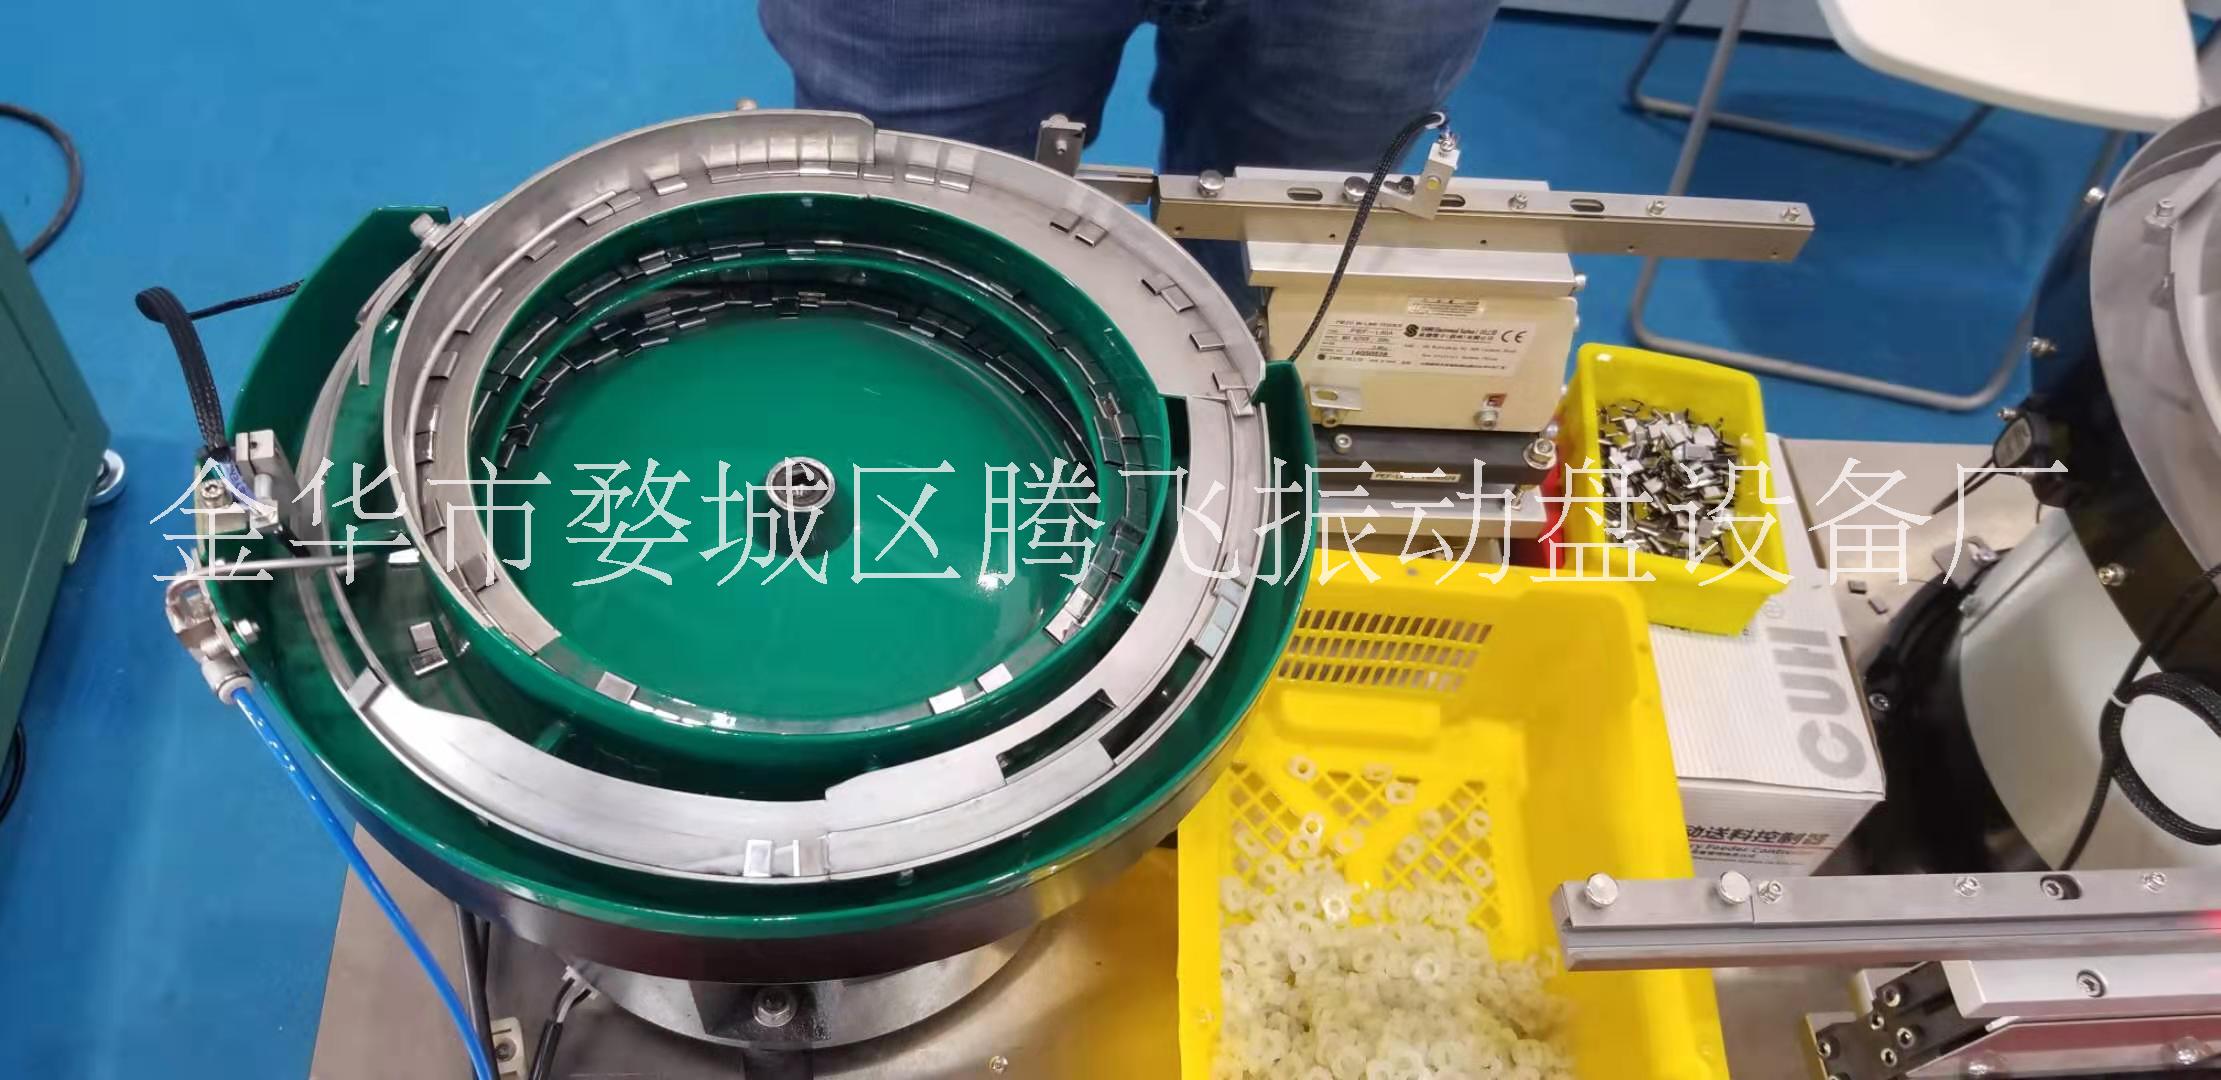 上海荷叶振动盘批发厂家出厂成本价销售 支持非标定制